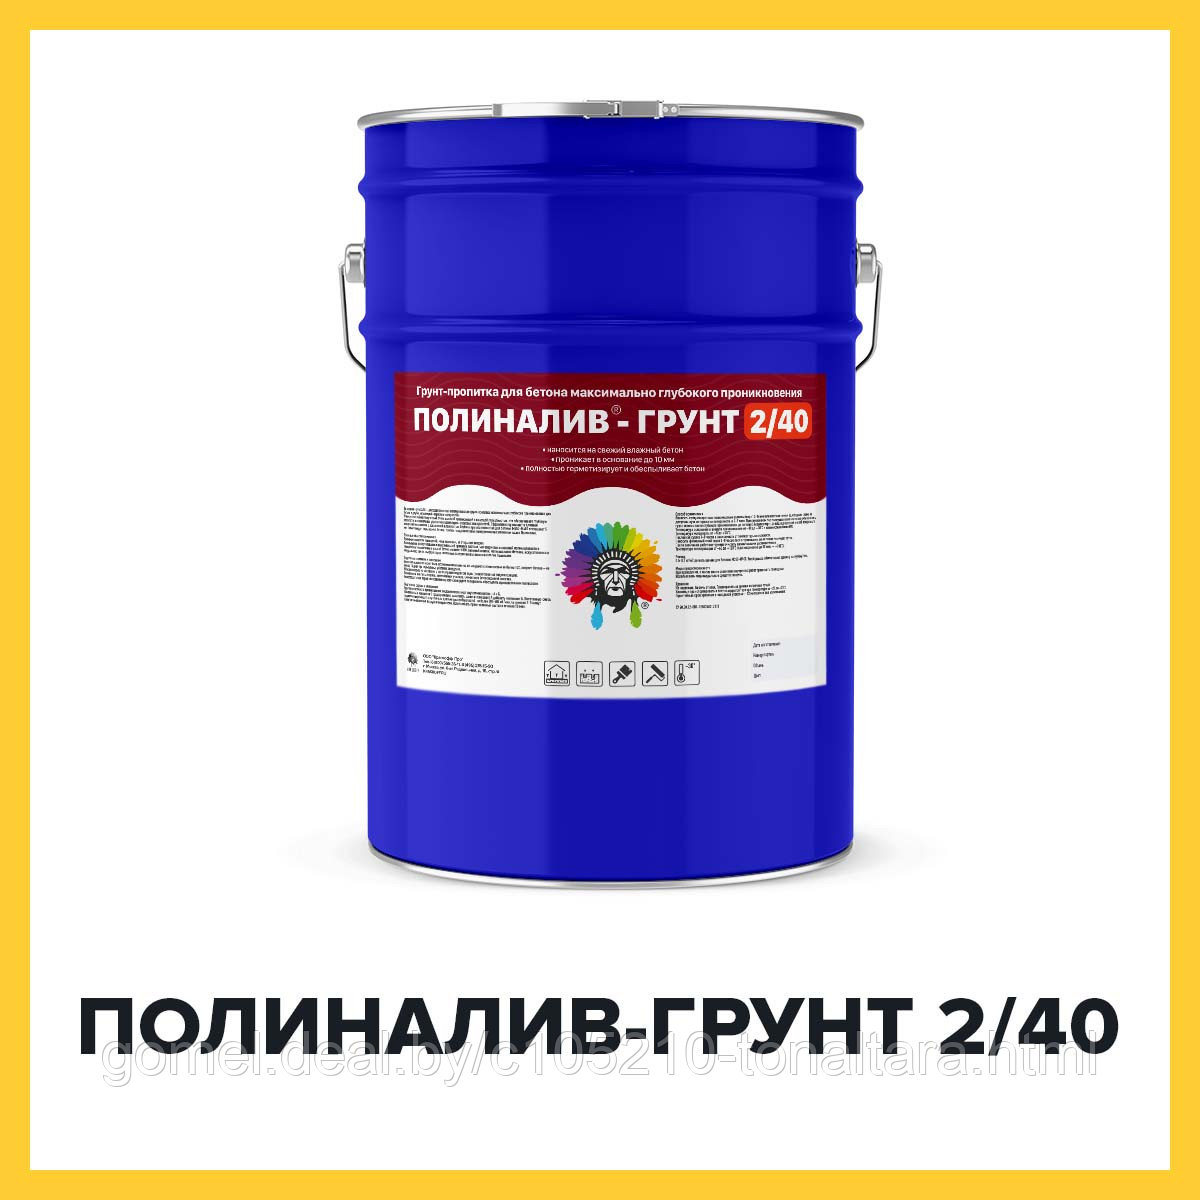 ПОЛИНАЛИВ-ГРУНТ 2/40 (Kraskoff Pro) – полиуретановая грунт-пропитка для наливных полов